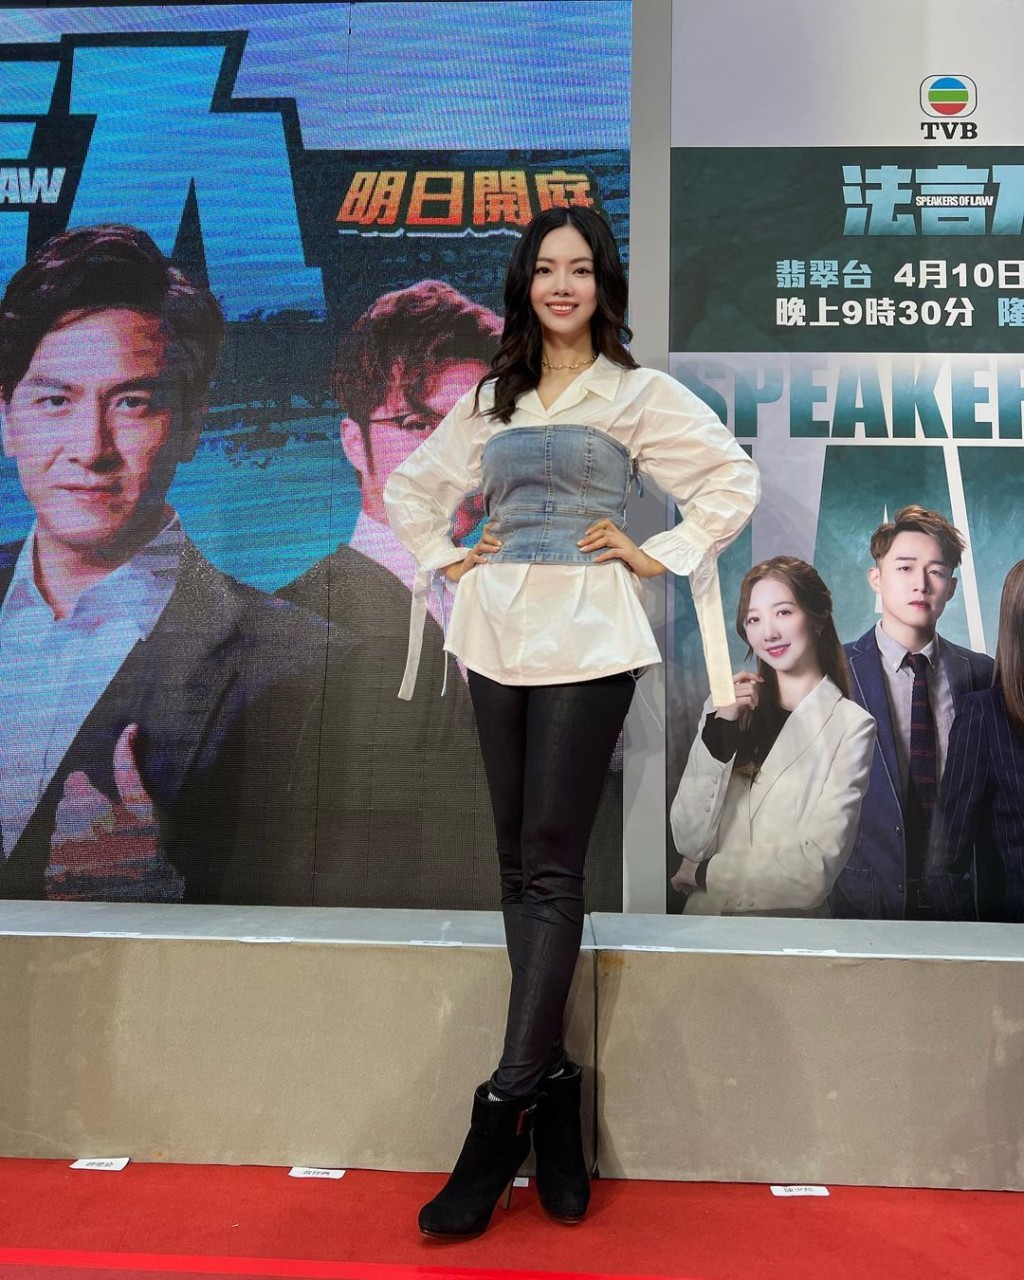 林熹瞳現時在TVB有不少機會。